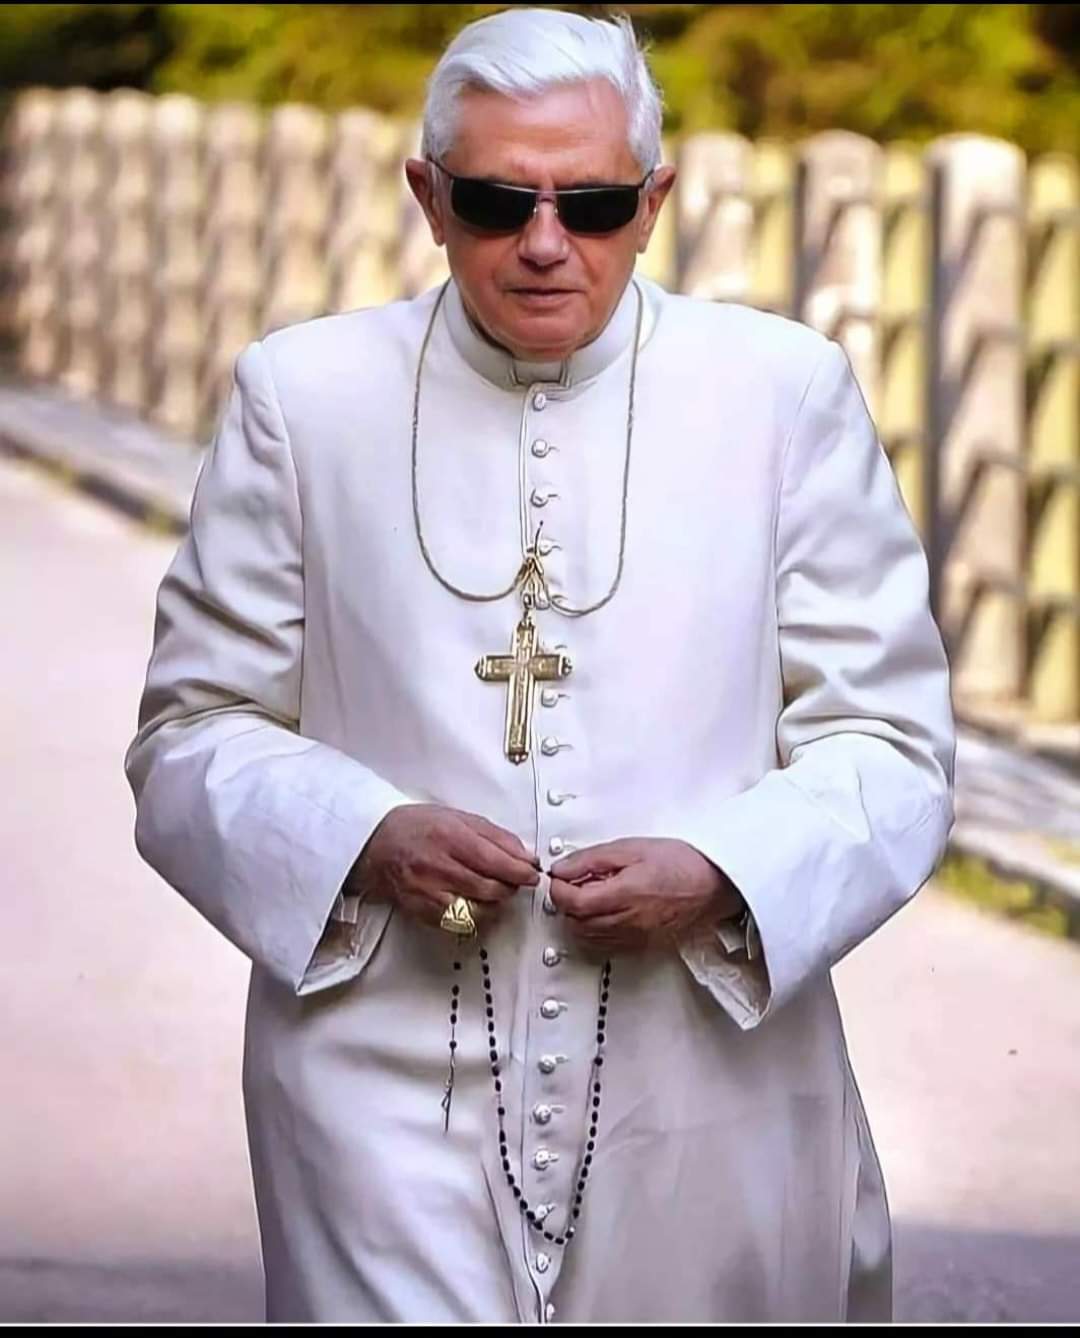 Umrl je nekdanji papež Benedikt XVI  v starosti 96 let – “Nikoli nismo imeli situacije, ko bi živi papež pokopal mrtvega”